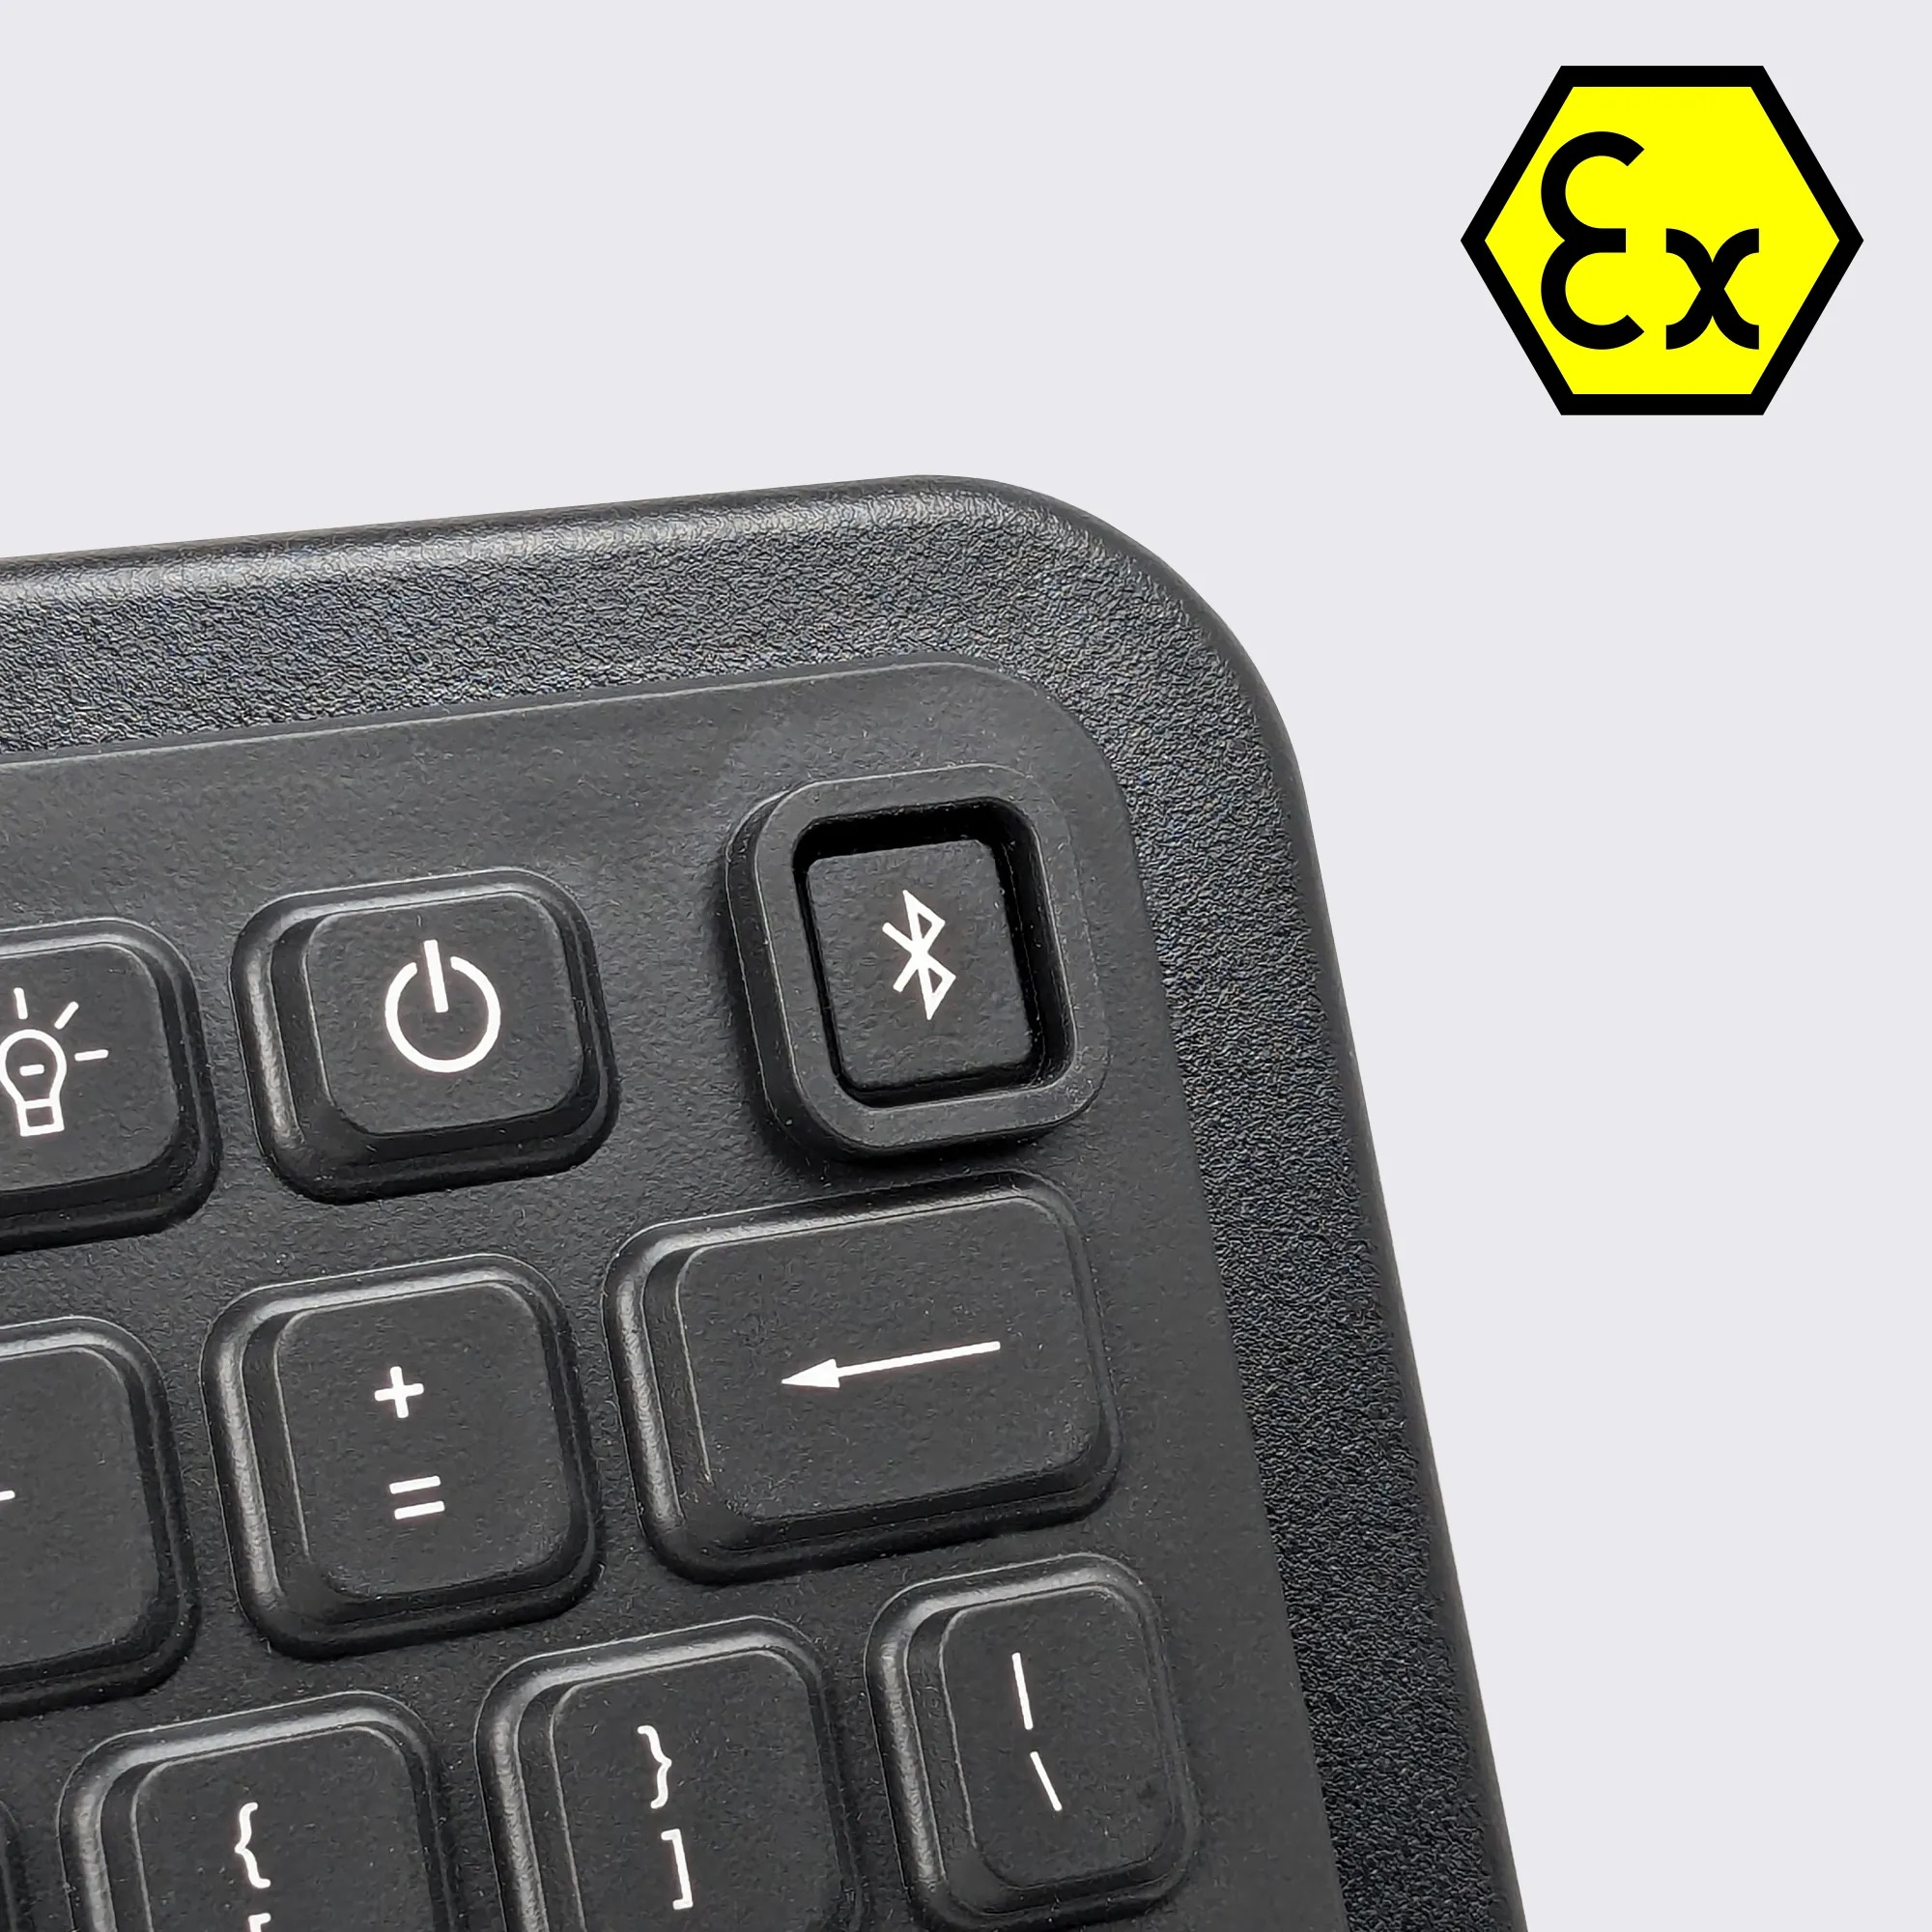 ATEX Intrinsically Safe Keyboard – Armadex BT-Key-02